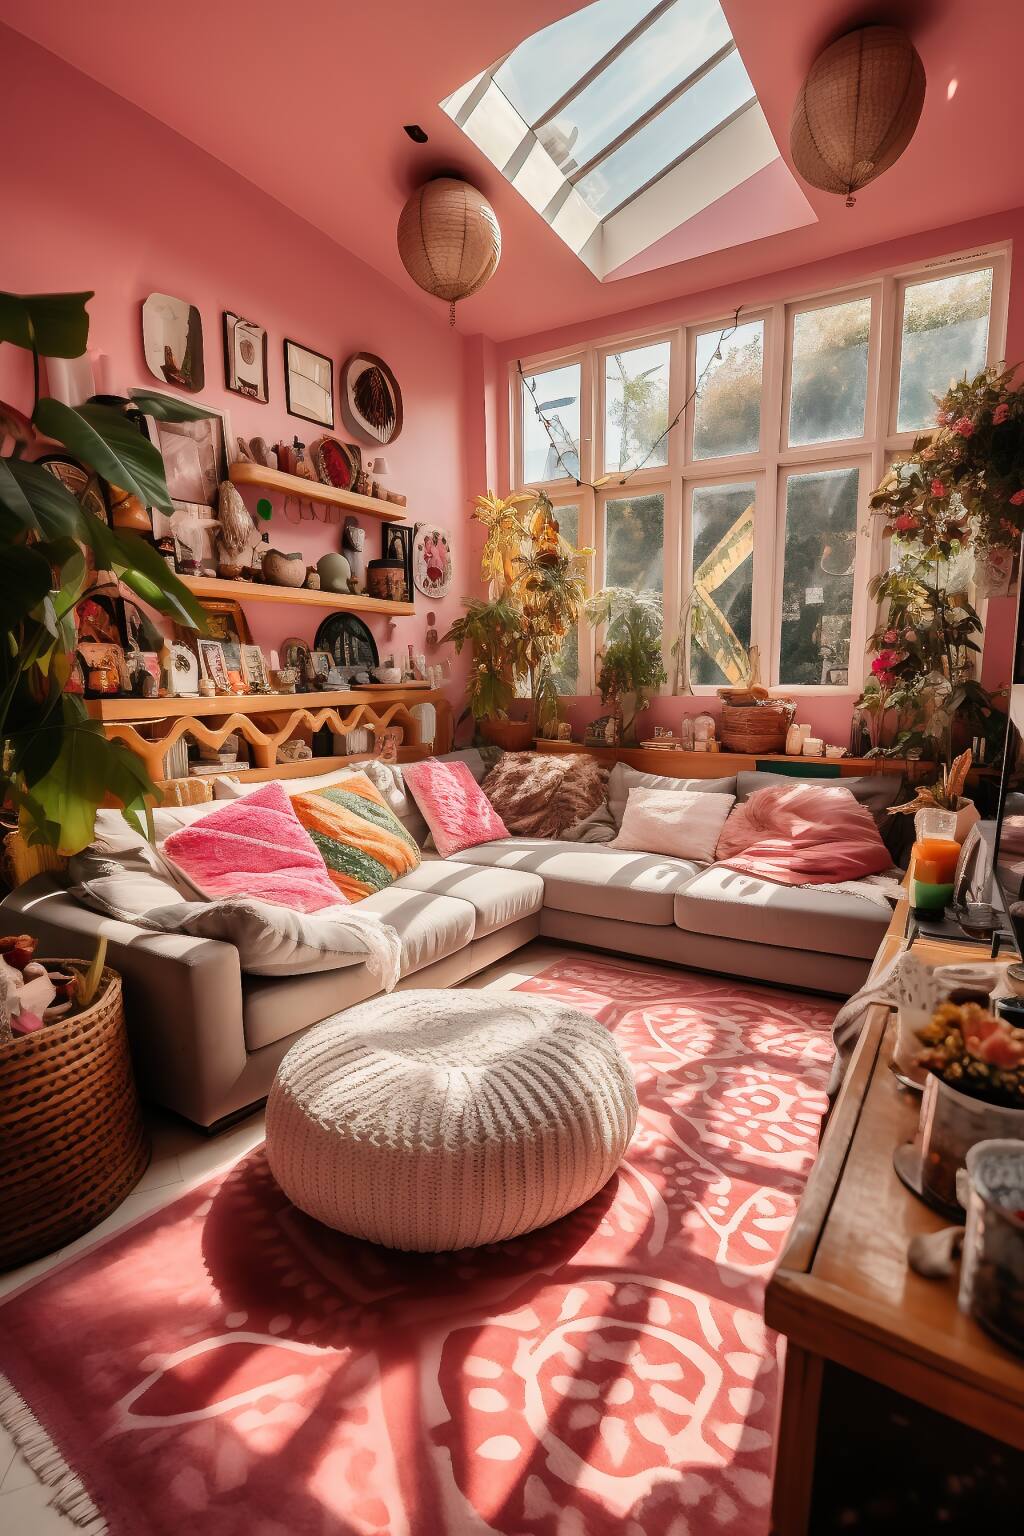 Ein Gemütliches Romantisches Bohème-Wohnzimmer Mit Rosafarbenen Wänden, Modularen Sofas Mit Bunten Kissen, Zimmerpflanzen Und Sonne, Die Durch Das Dachfenster Scheint.